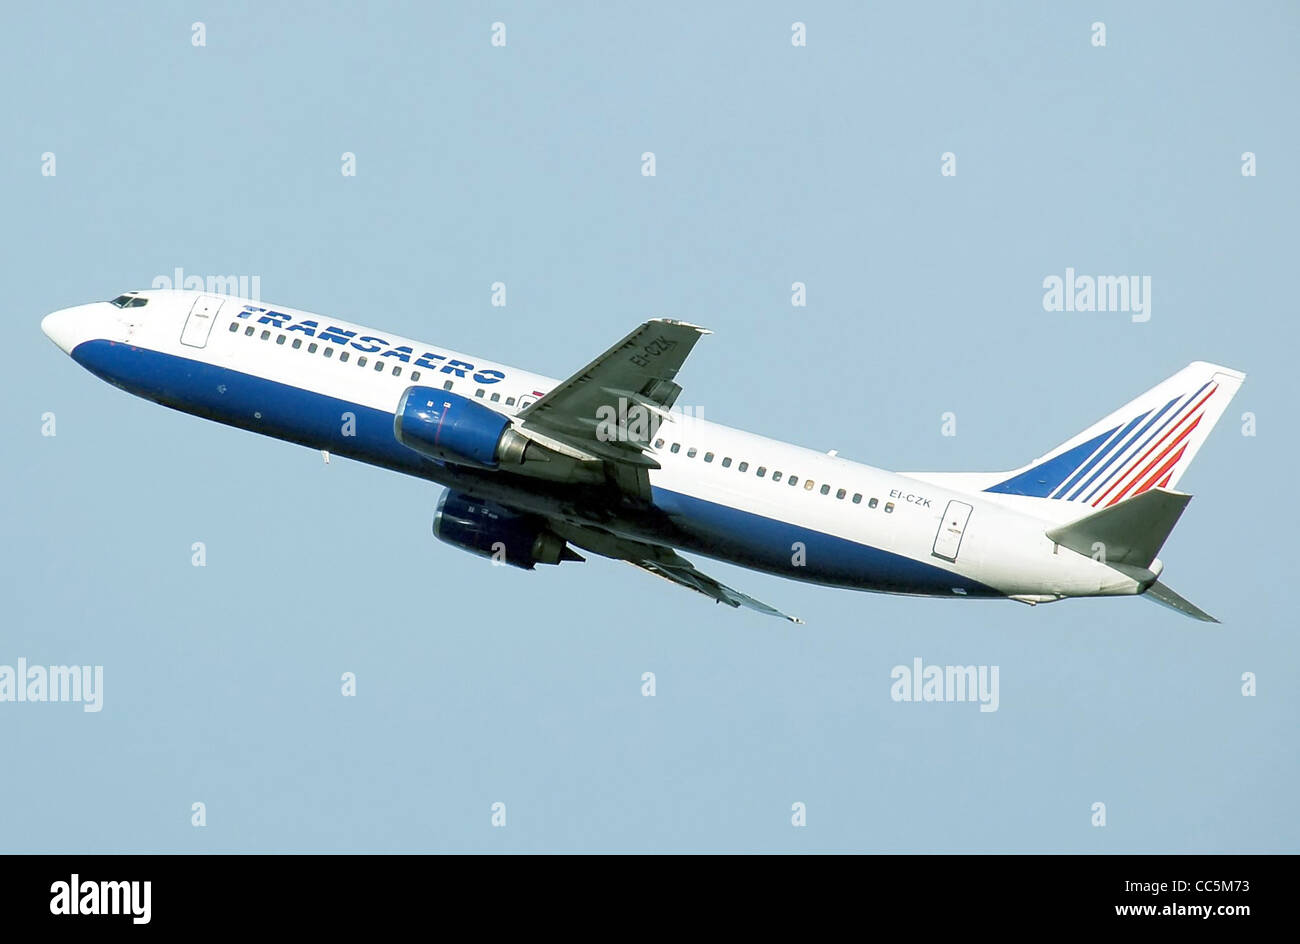 Transaero Boeing 737-400 (EI-CZK) takes off from London Heathrow Airport, England Stock Photo